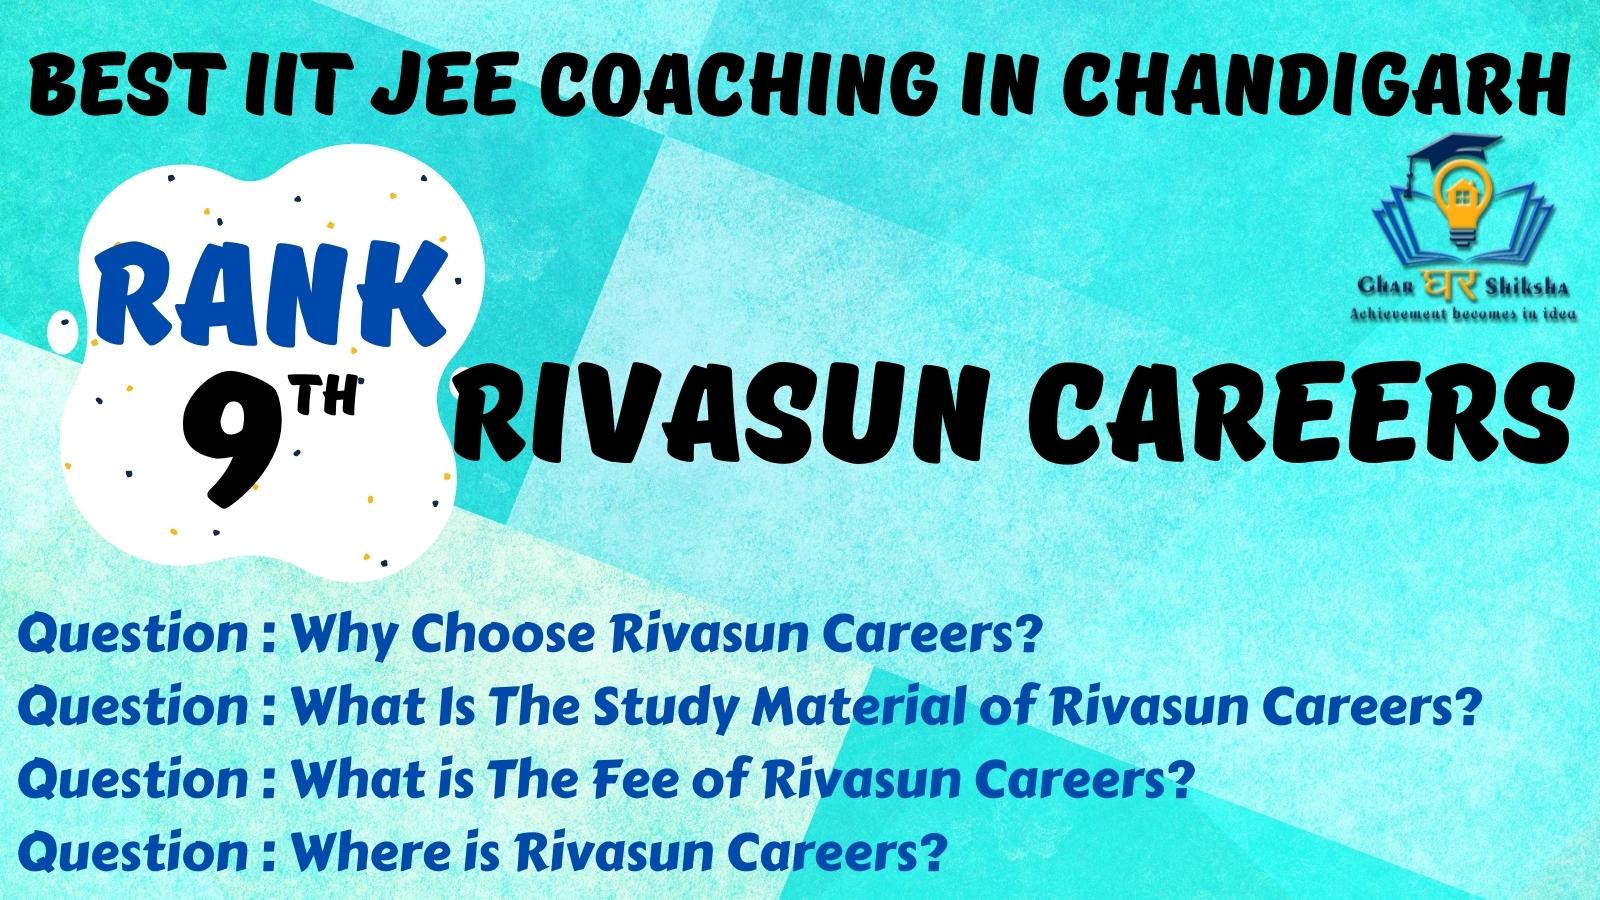 Best IIT JEE Coaching Institutes In Chandigarh